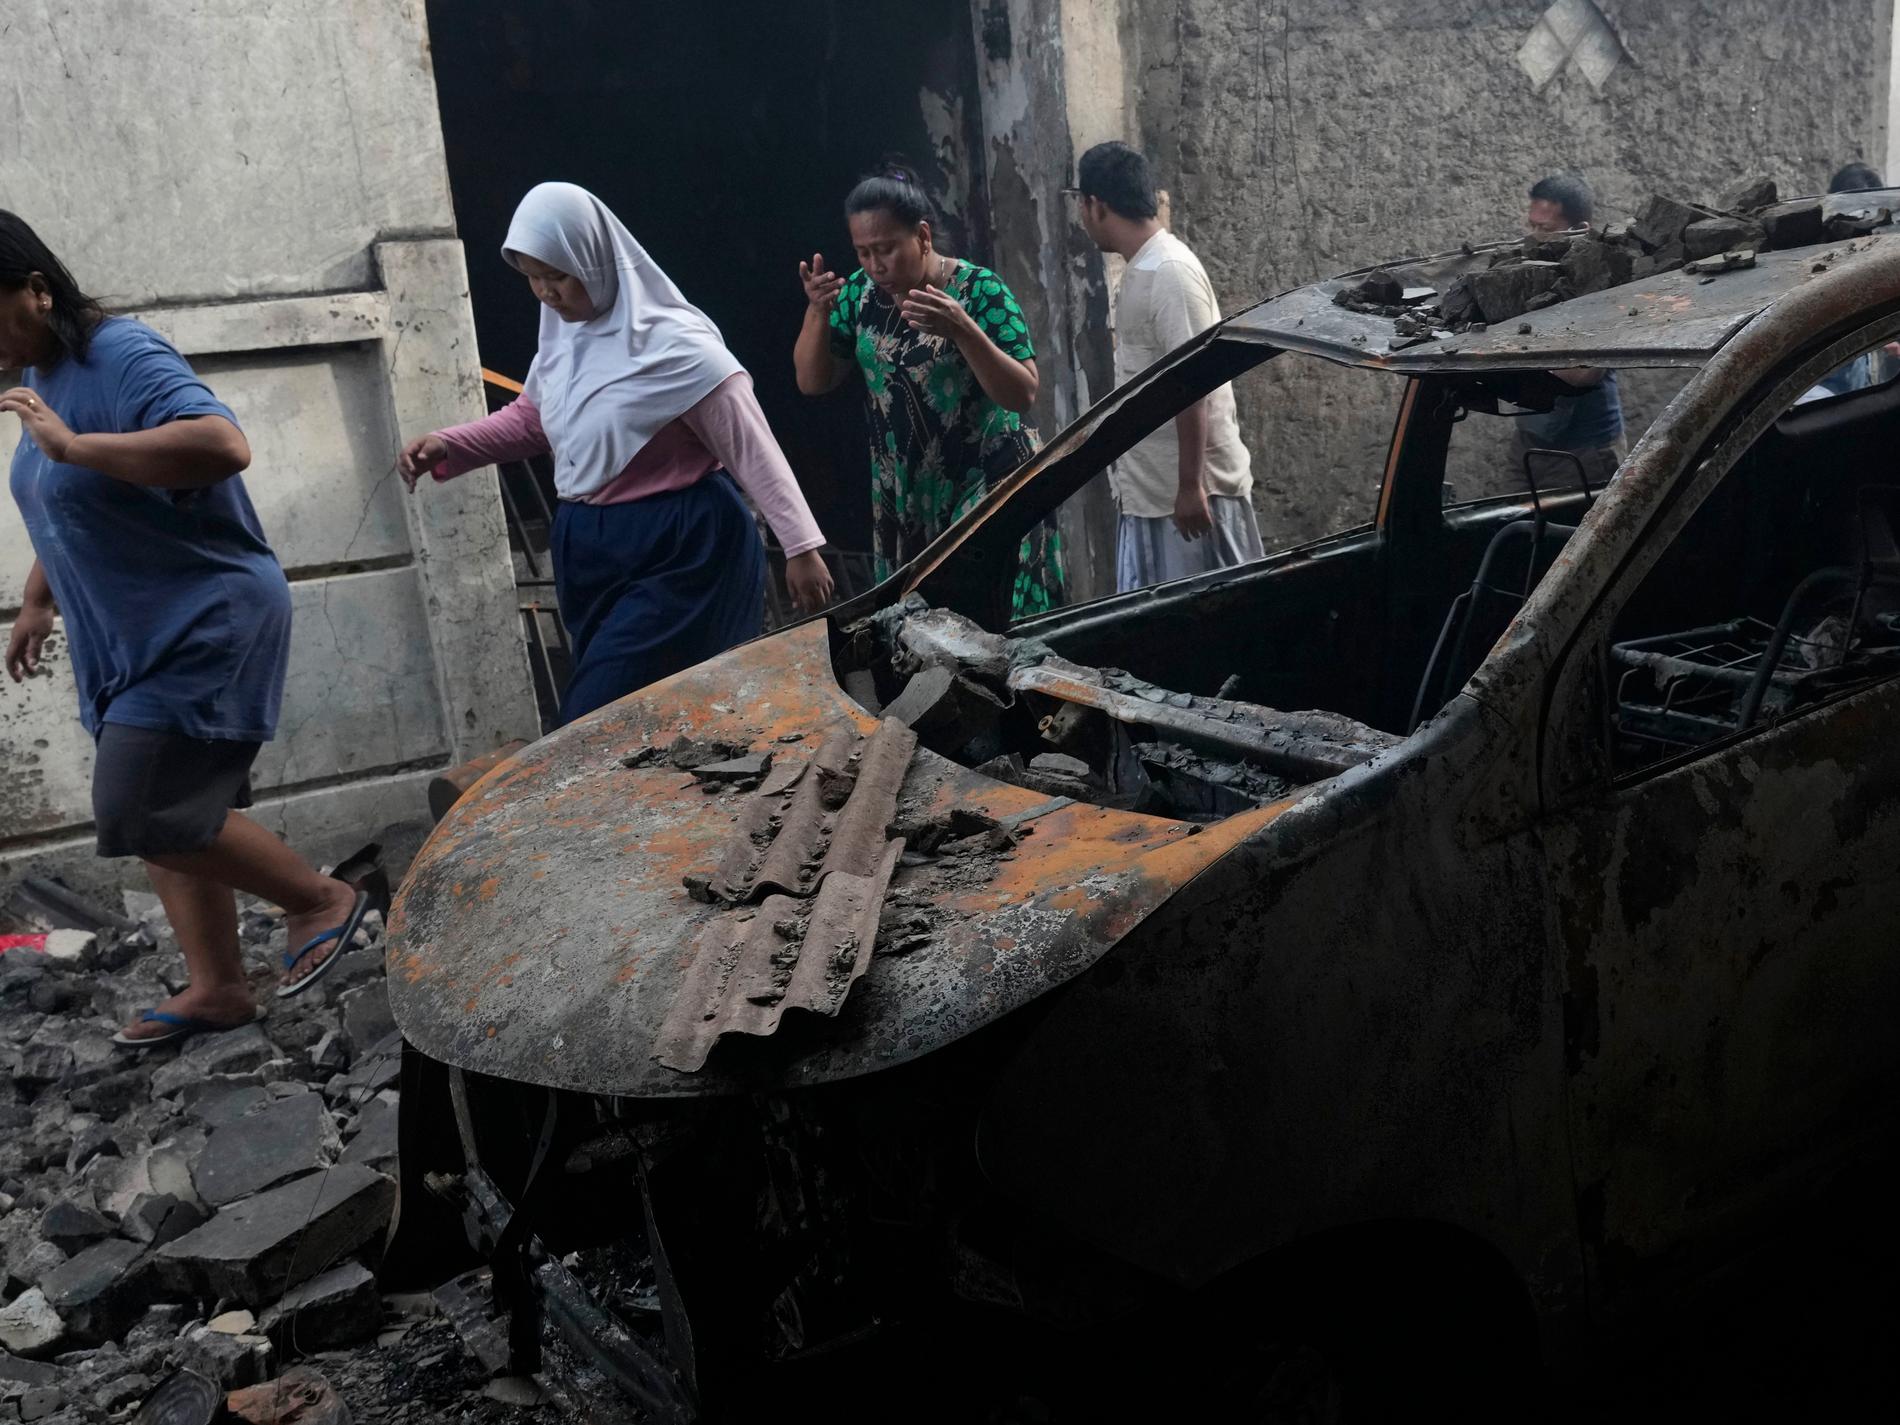 Tre saknas fortfarande efter indonesisk brand